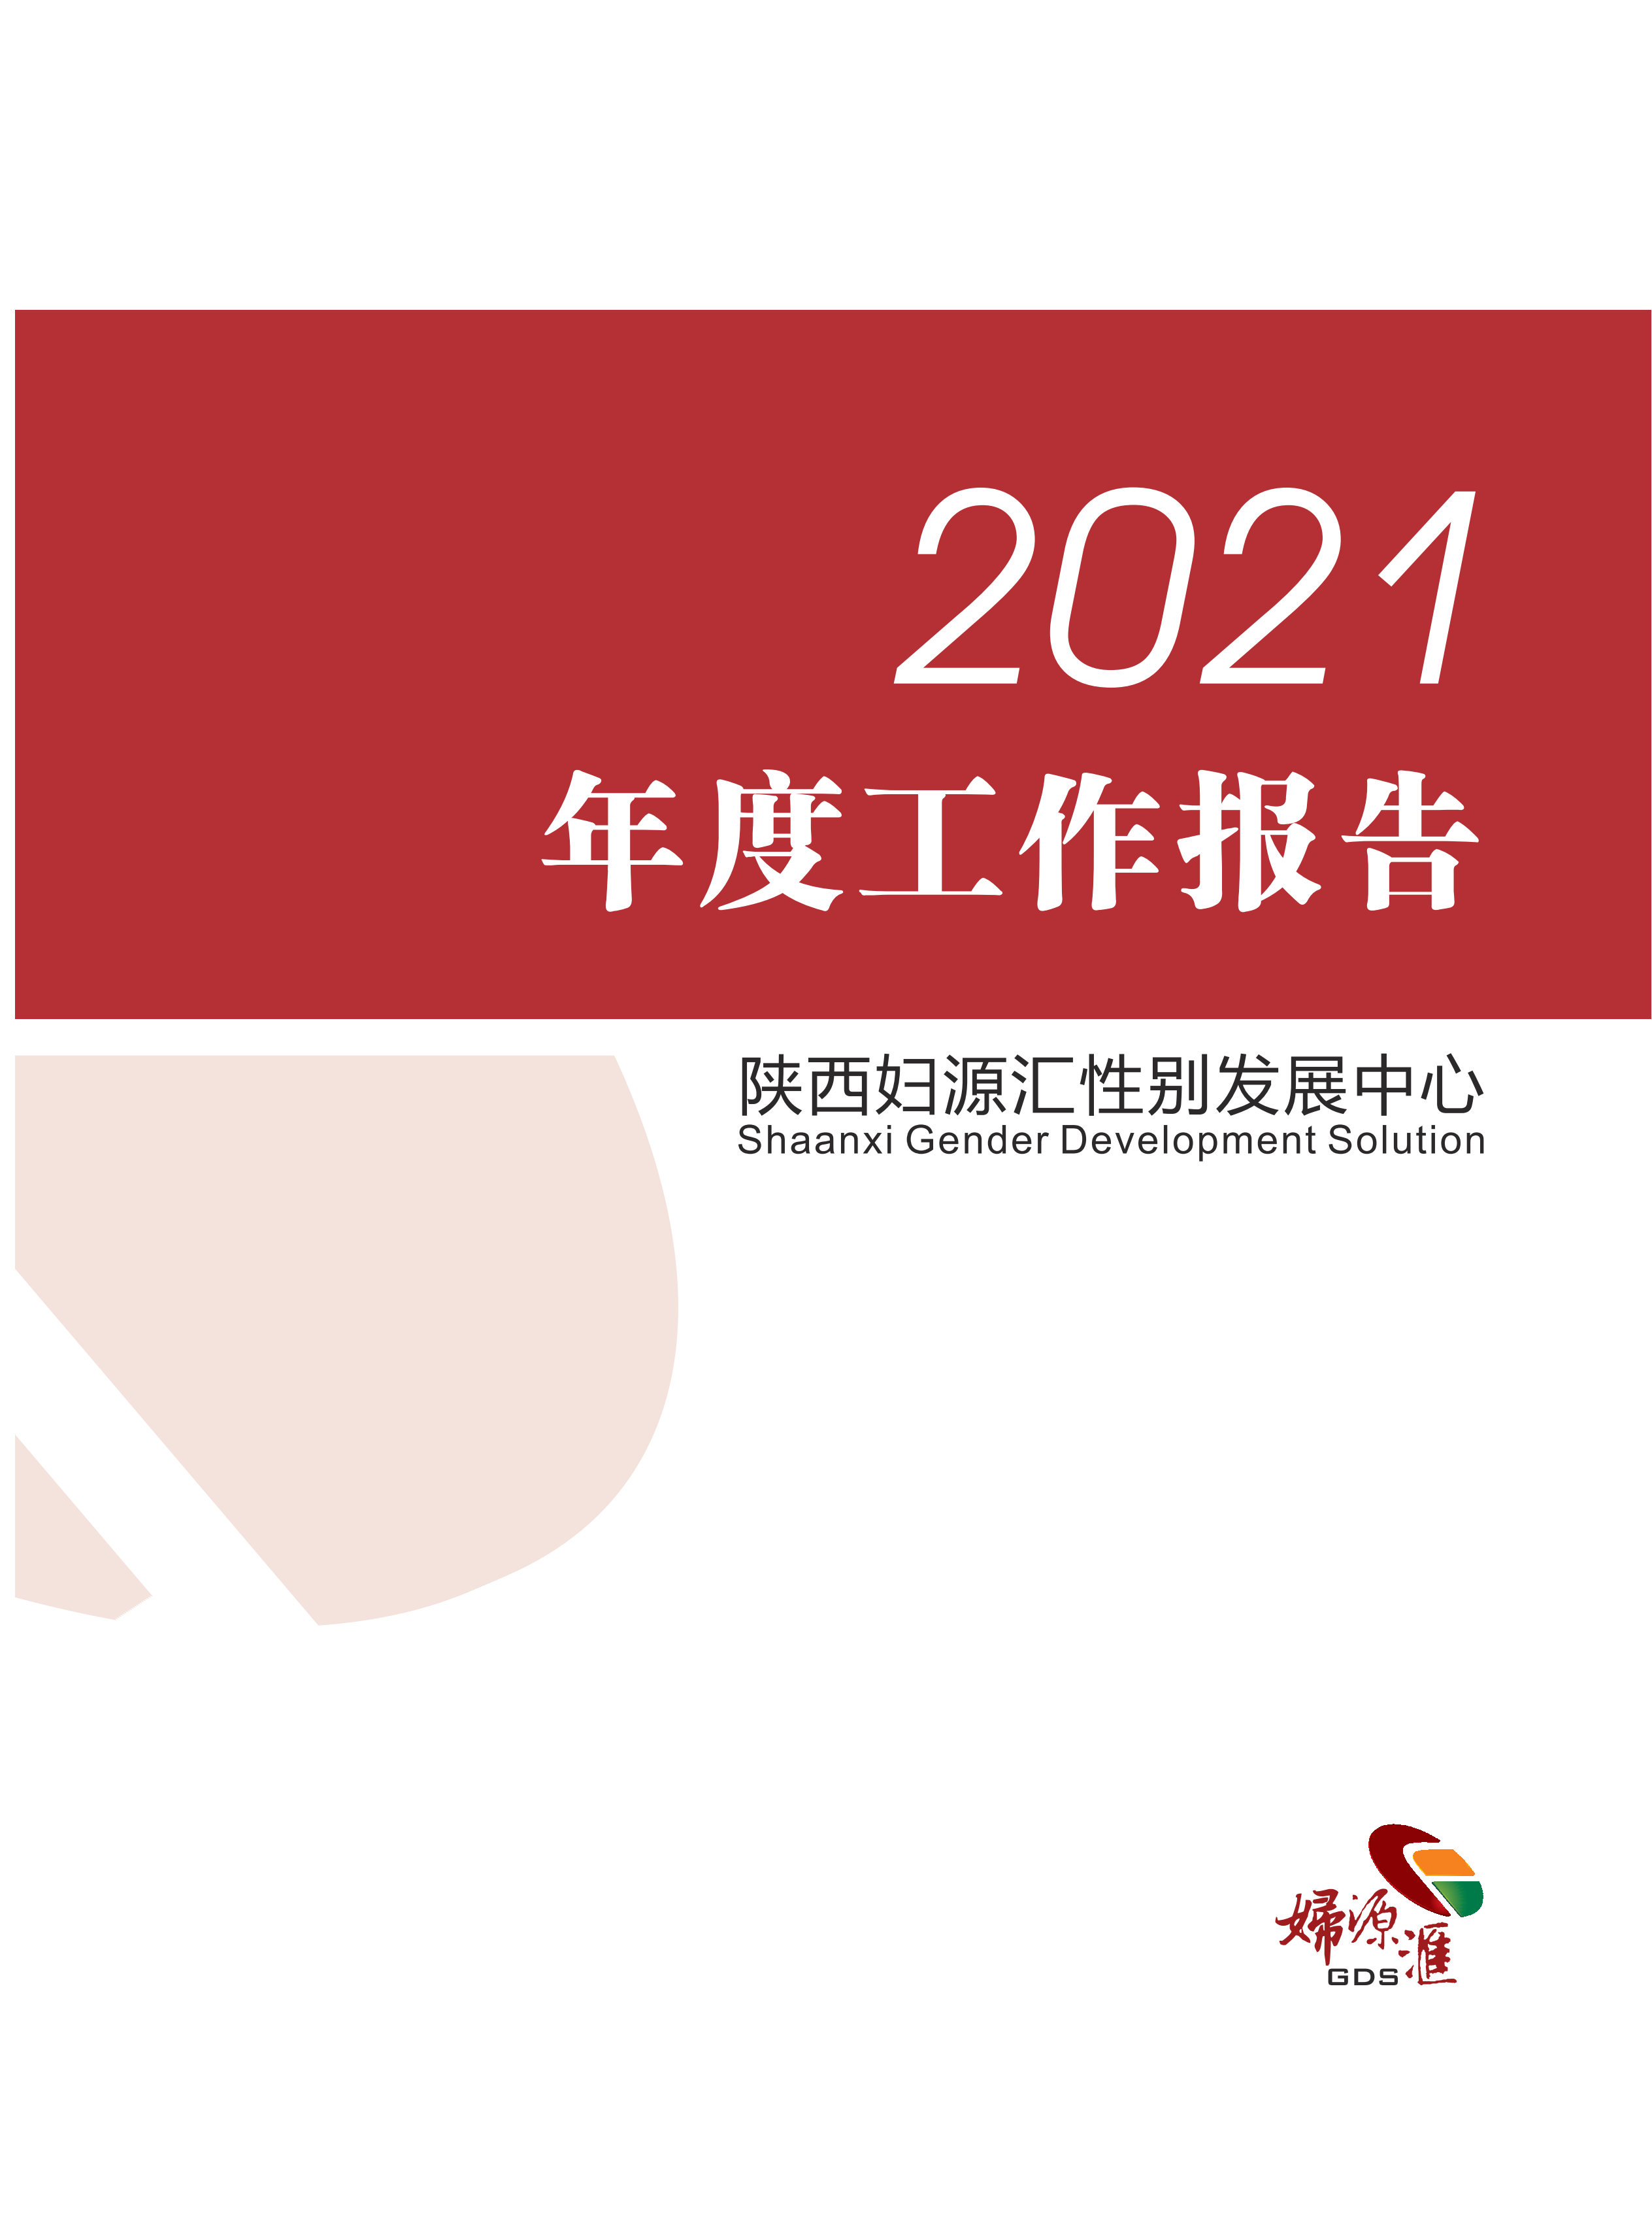 2021年年度工作报告